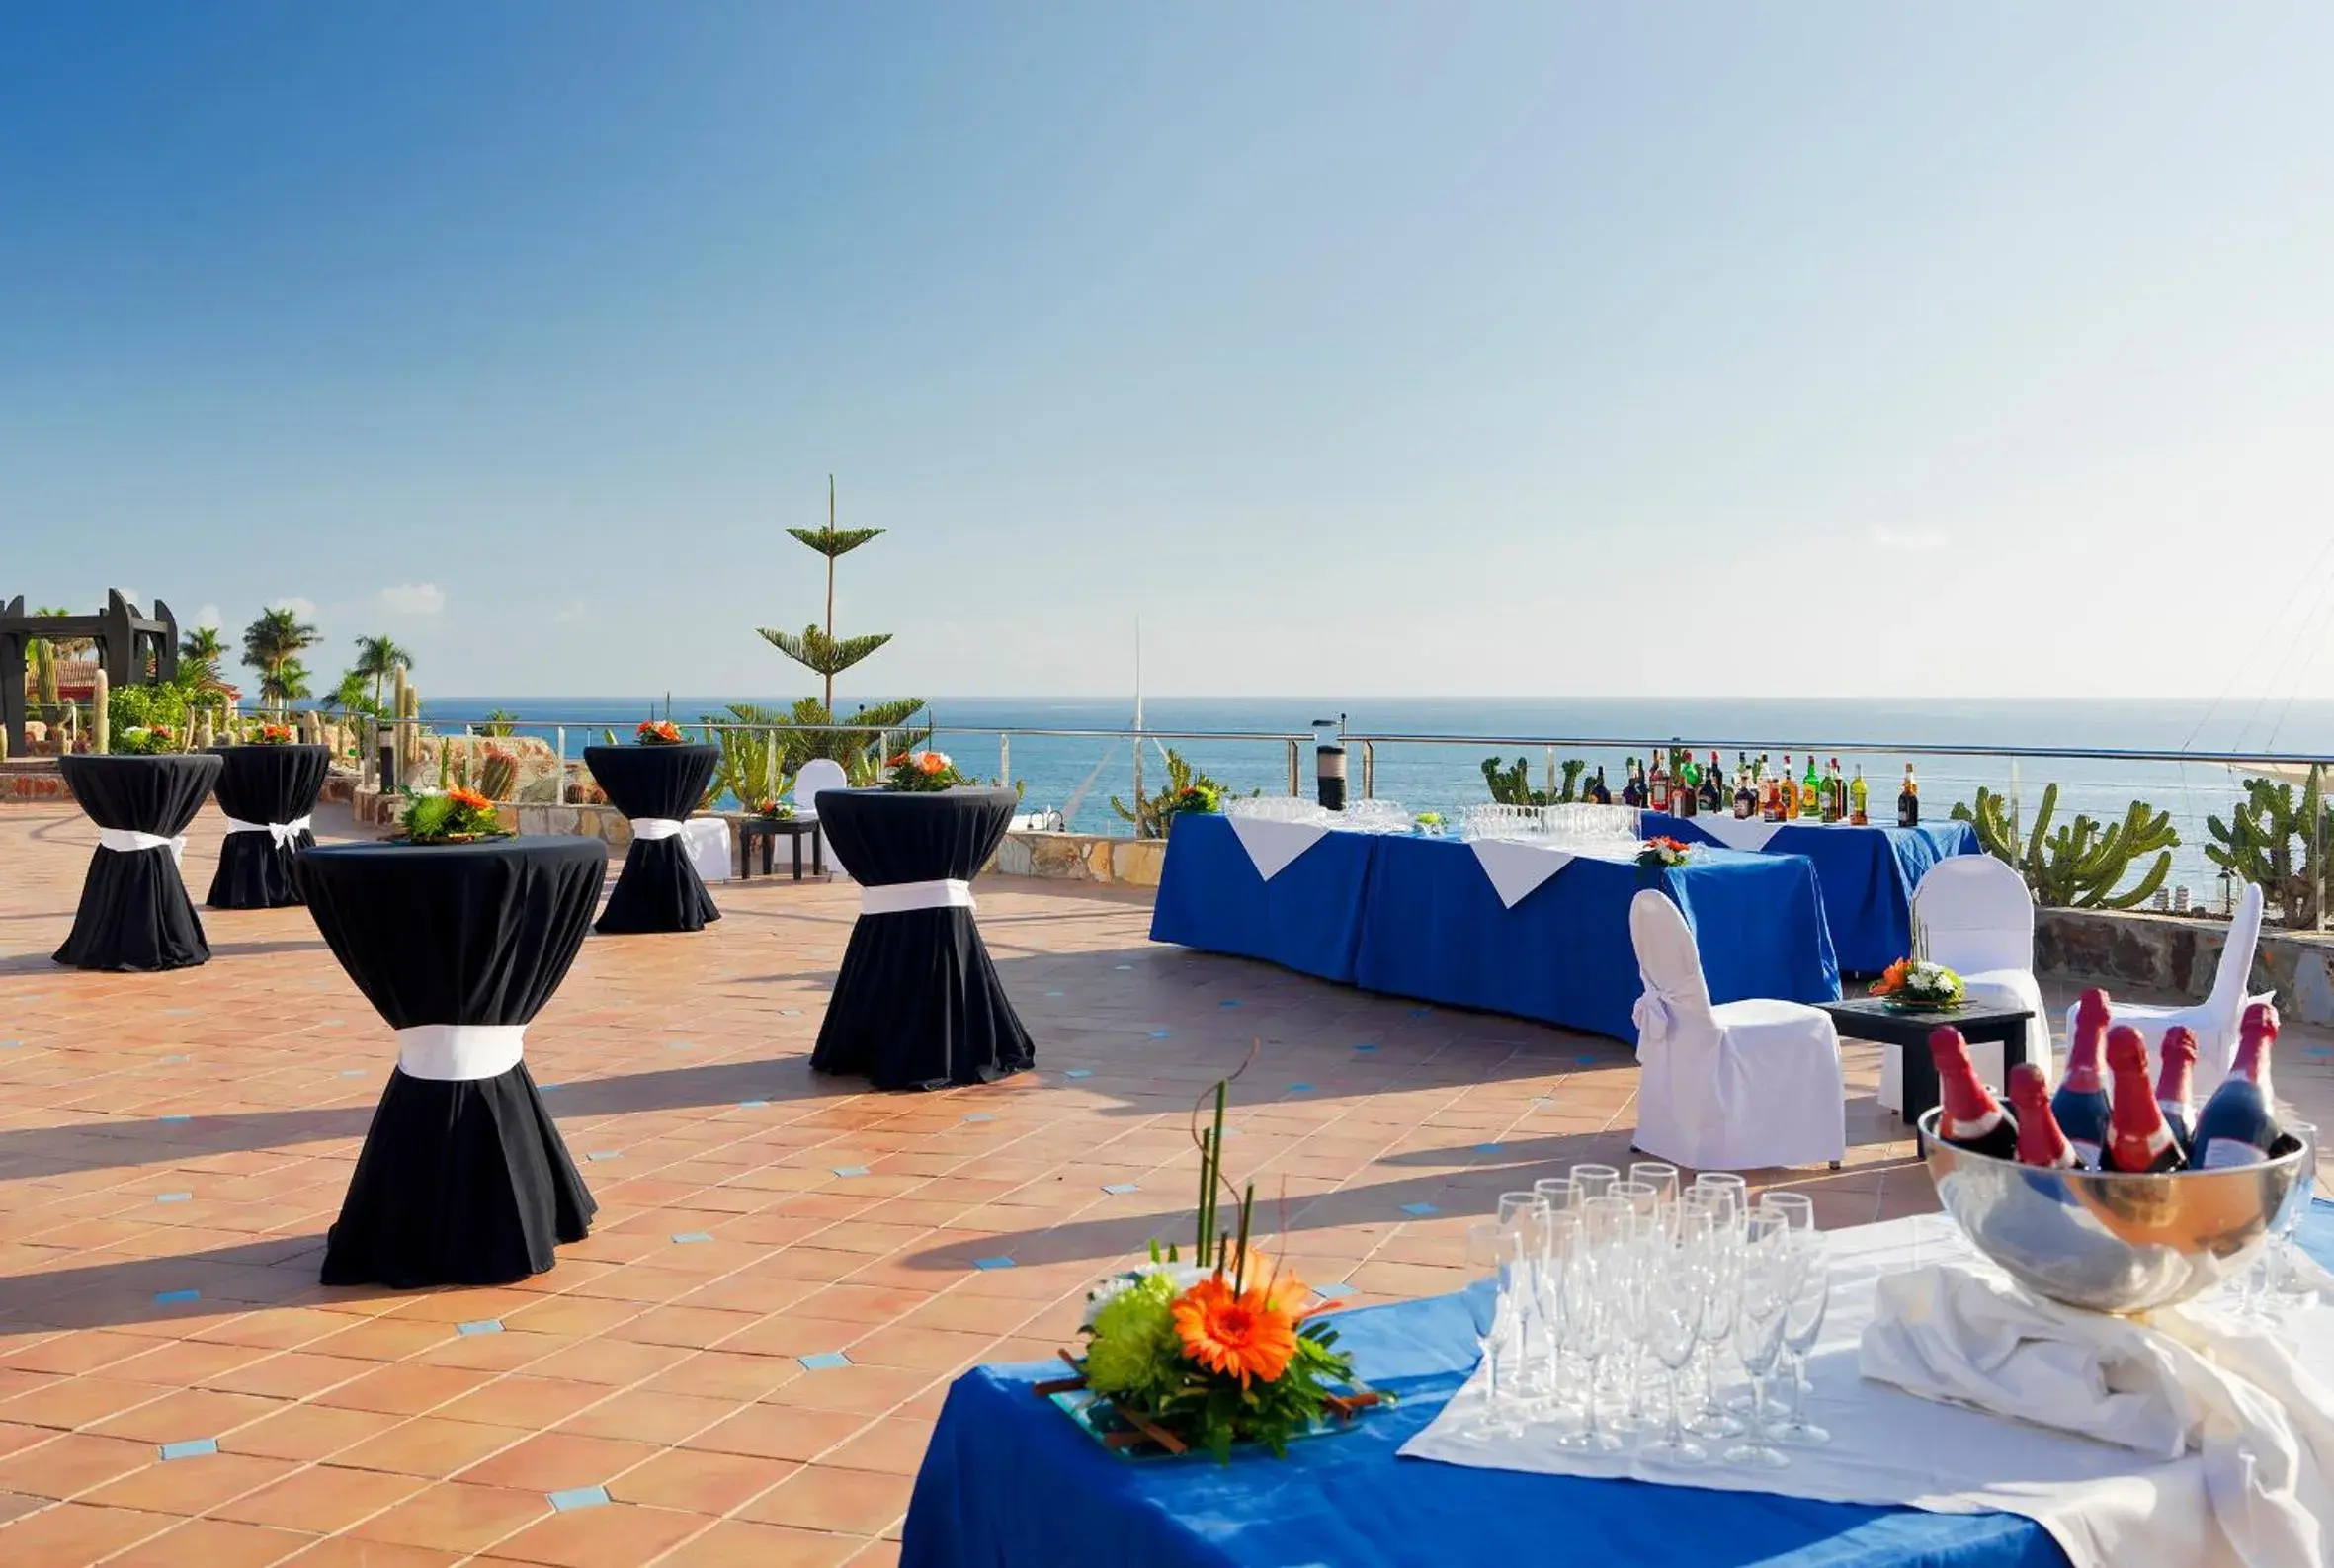 Banquet/Function facilities, Banquet Facilities in H10 Playa Meloneras Palace